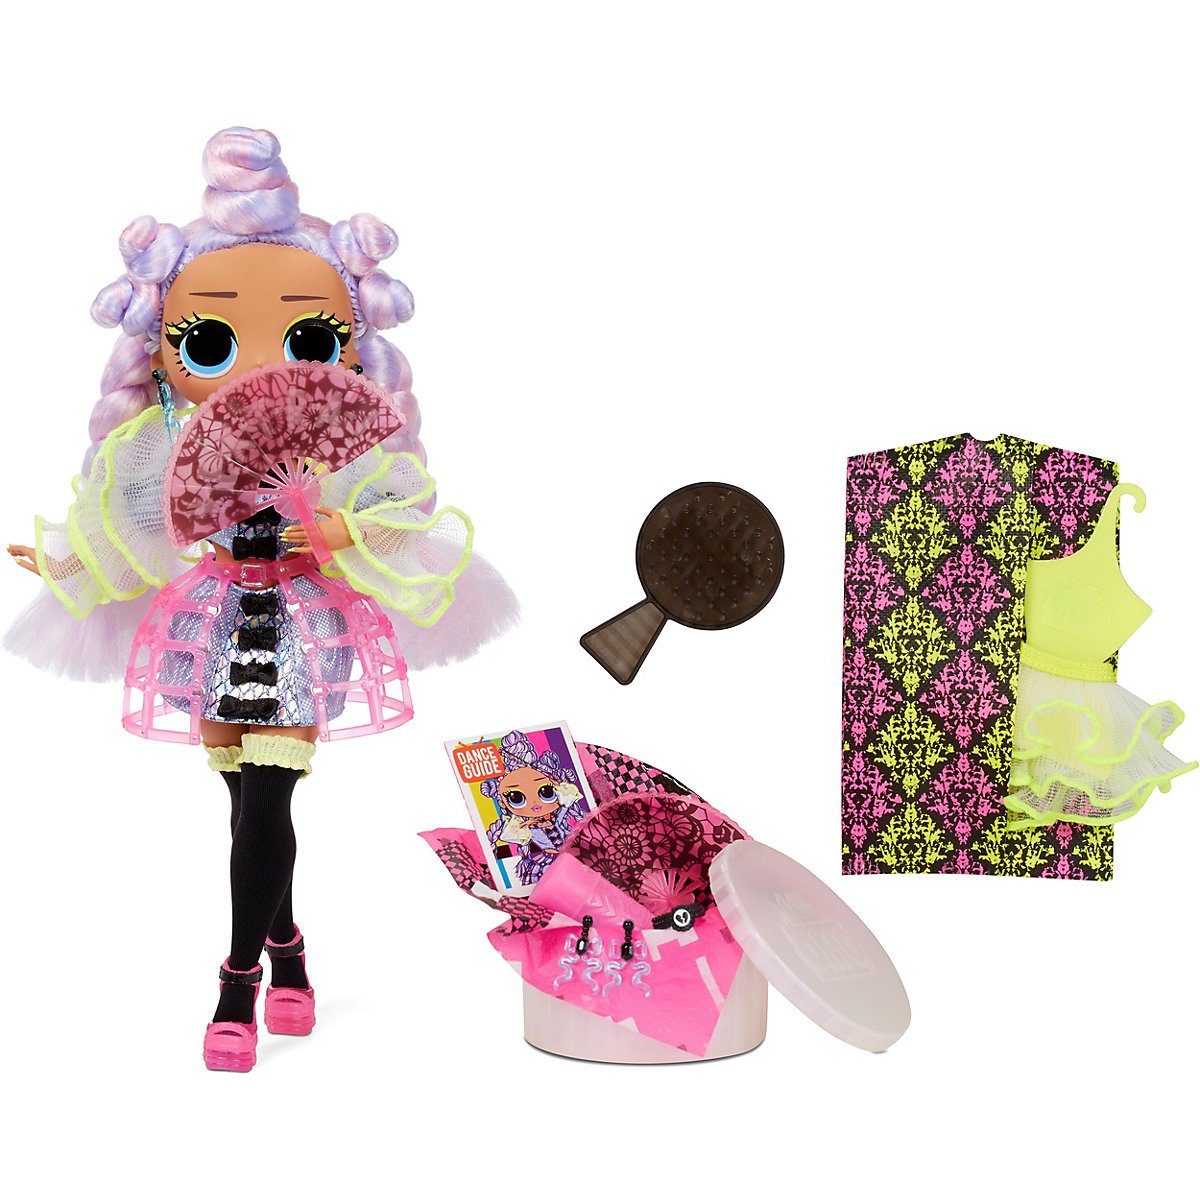 LOL Surprise Doll Puppe Hausspiel Spielset Baby Kinder Girls Spielzeug Geschenk 